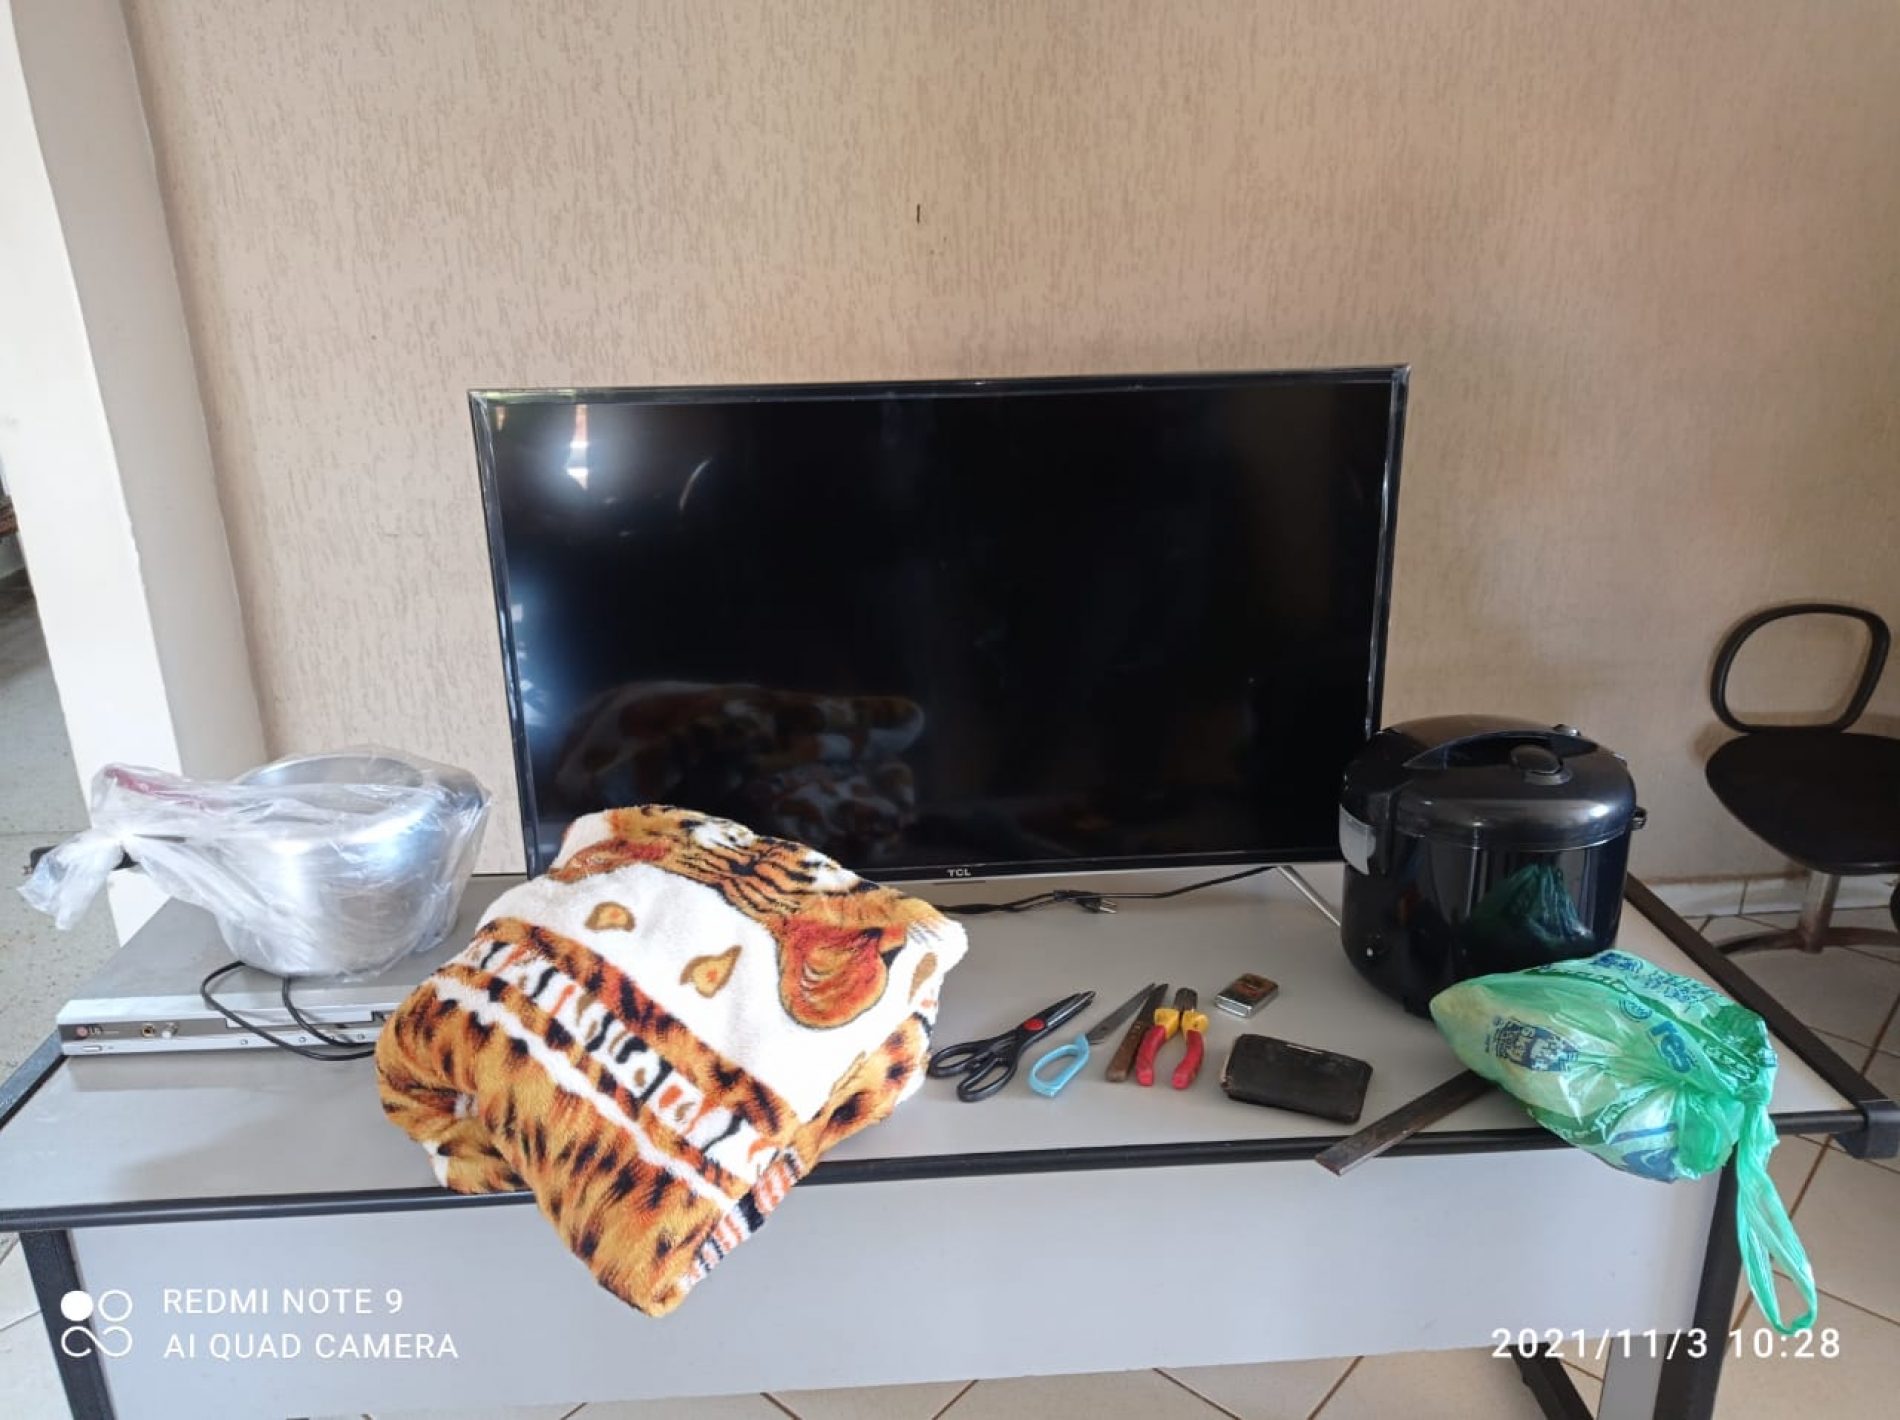 BARRETOS: Polícia Militar prende autor de furto e recupera diversos objetos